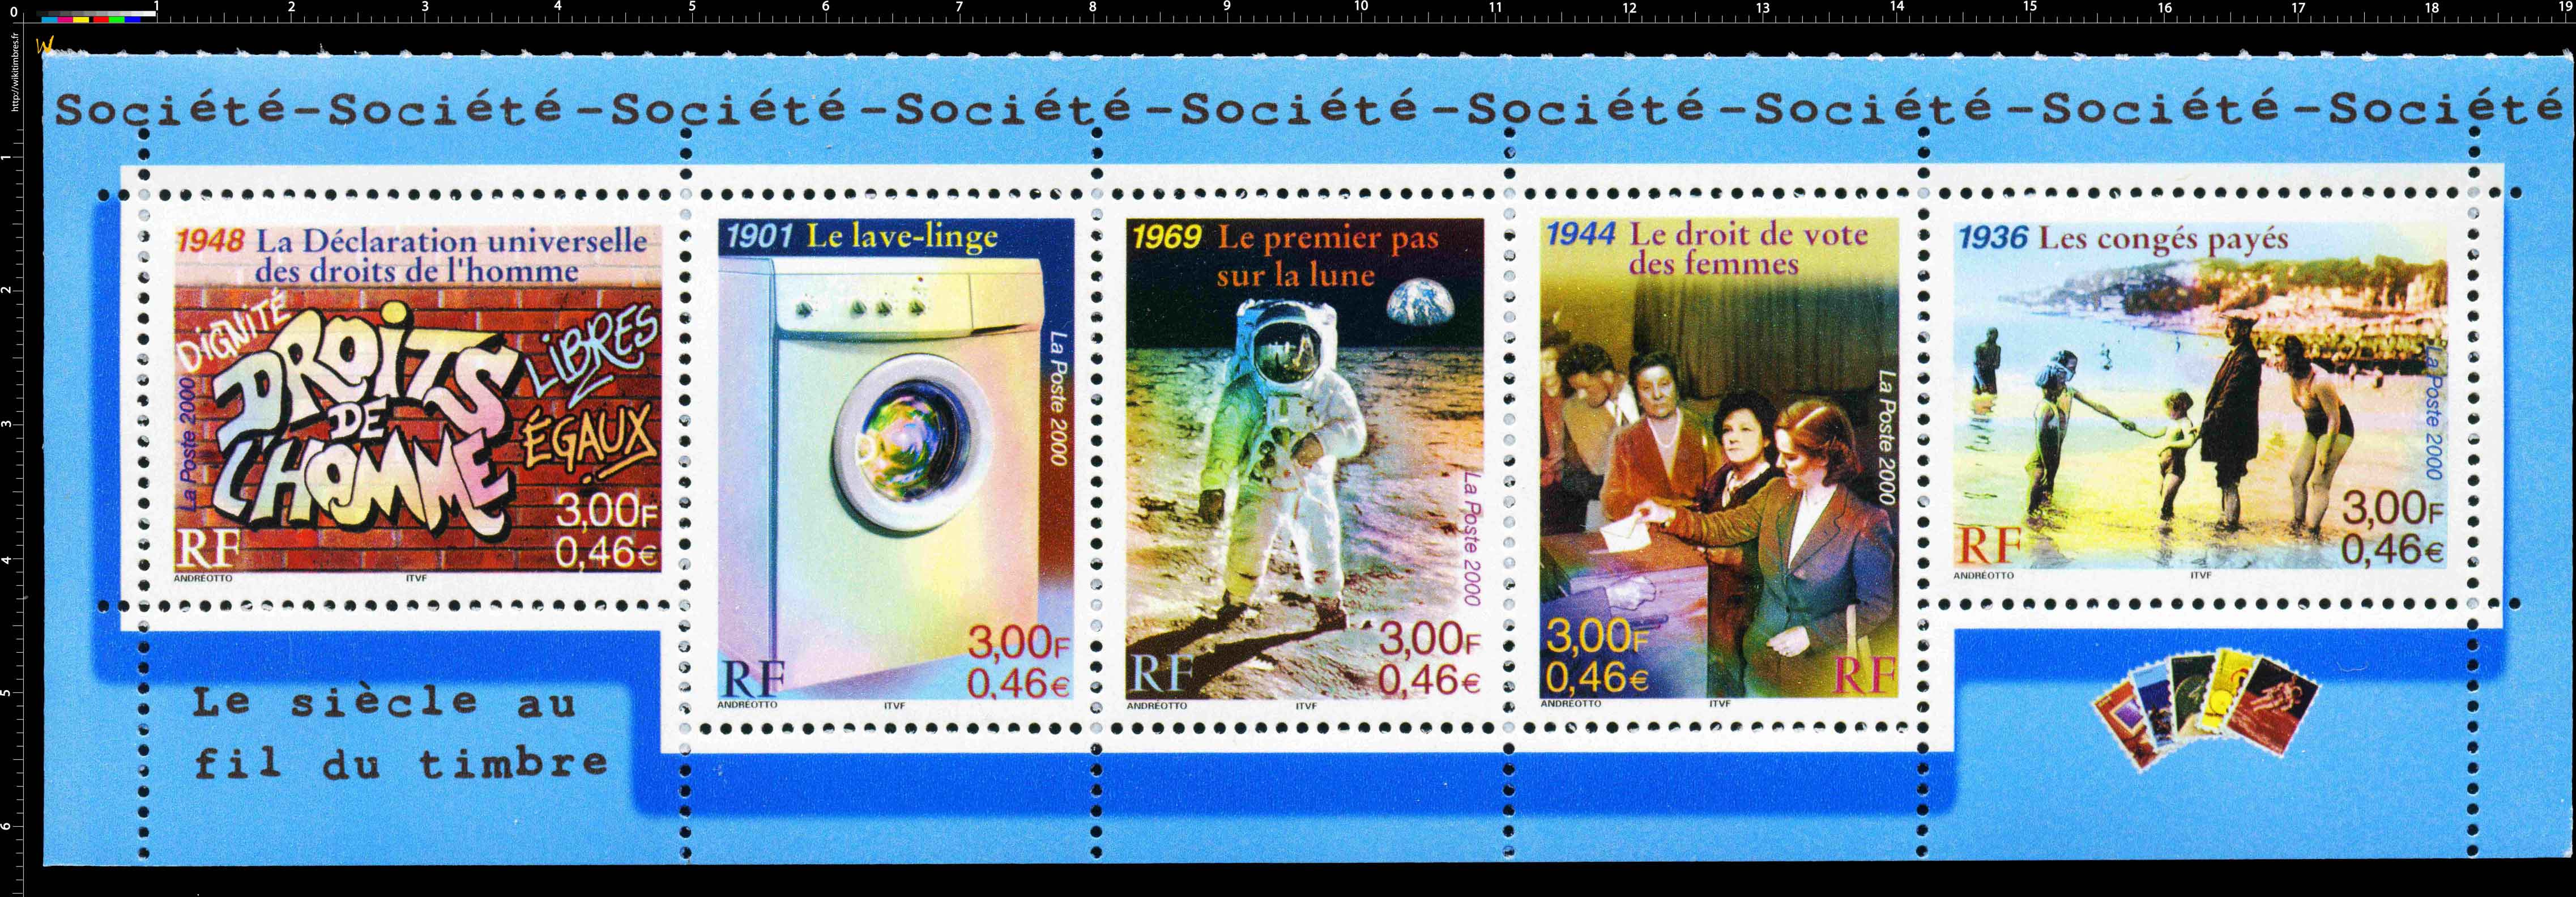 2000 Le Siècle au fil du timbre Société